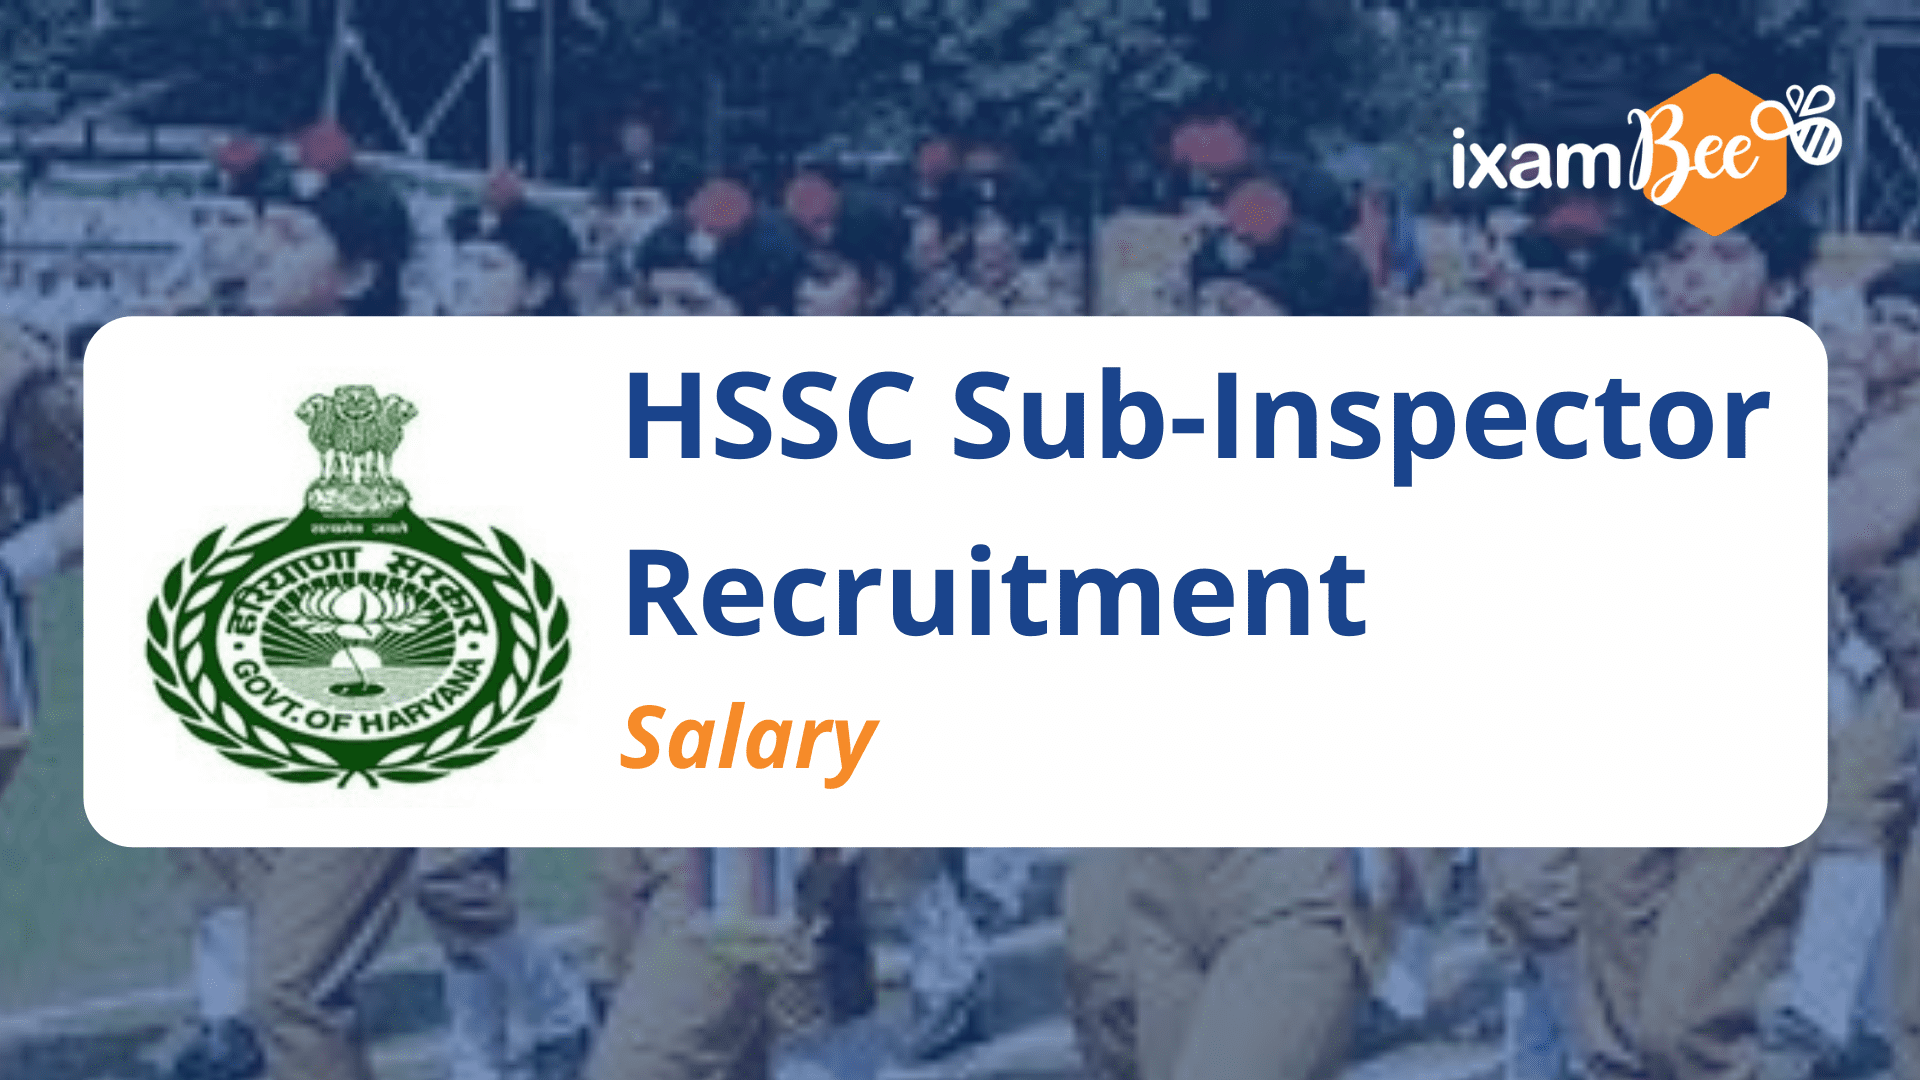 HSSC Sub-Inspector Recruitment Salary